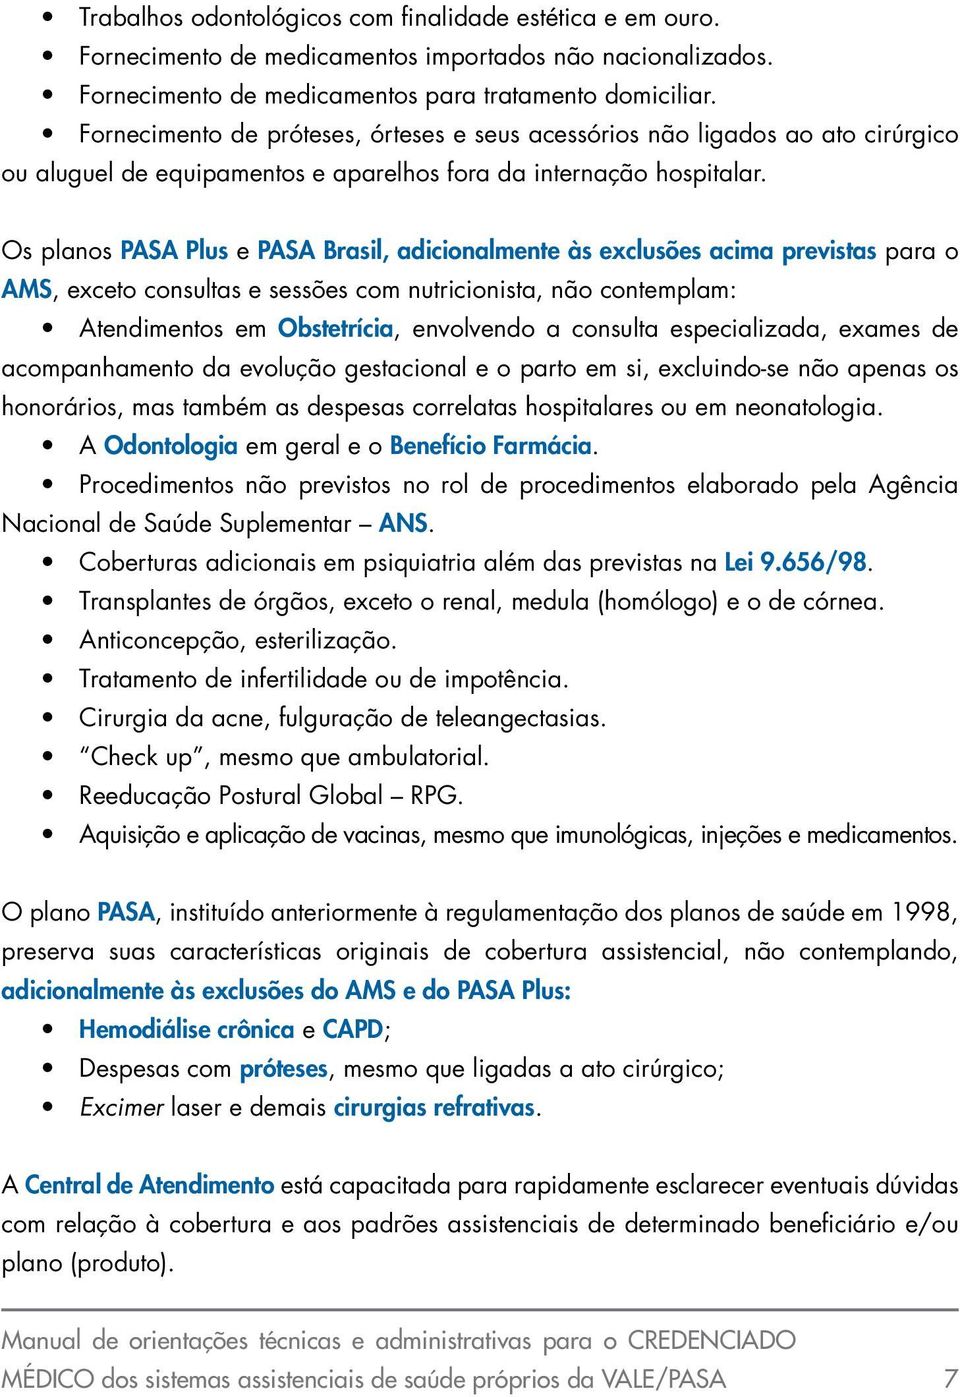 Os planos PASA Plus e PASA Brasil, adicionalmente às exclusões acima previstas para o AMS, exceto consultas e sessões com nutricionista, não contemplam: Atendimentos em Obstetrícia, envolvendo a